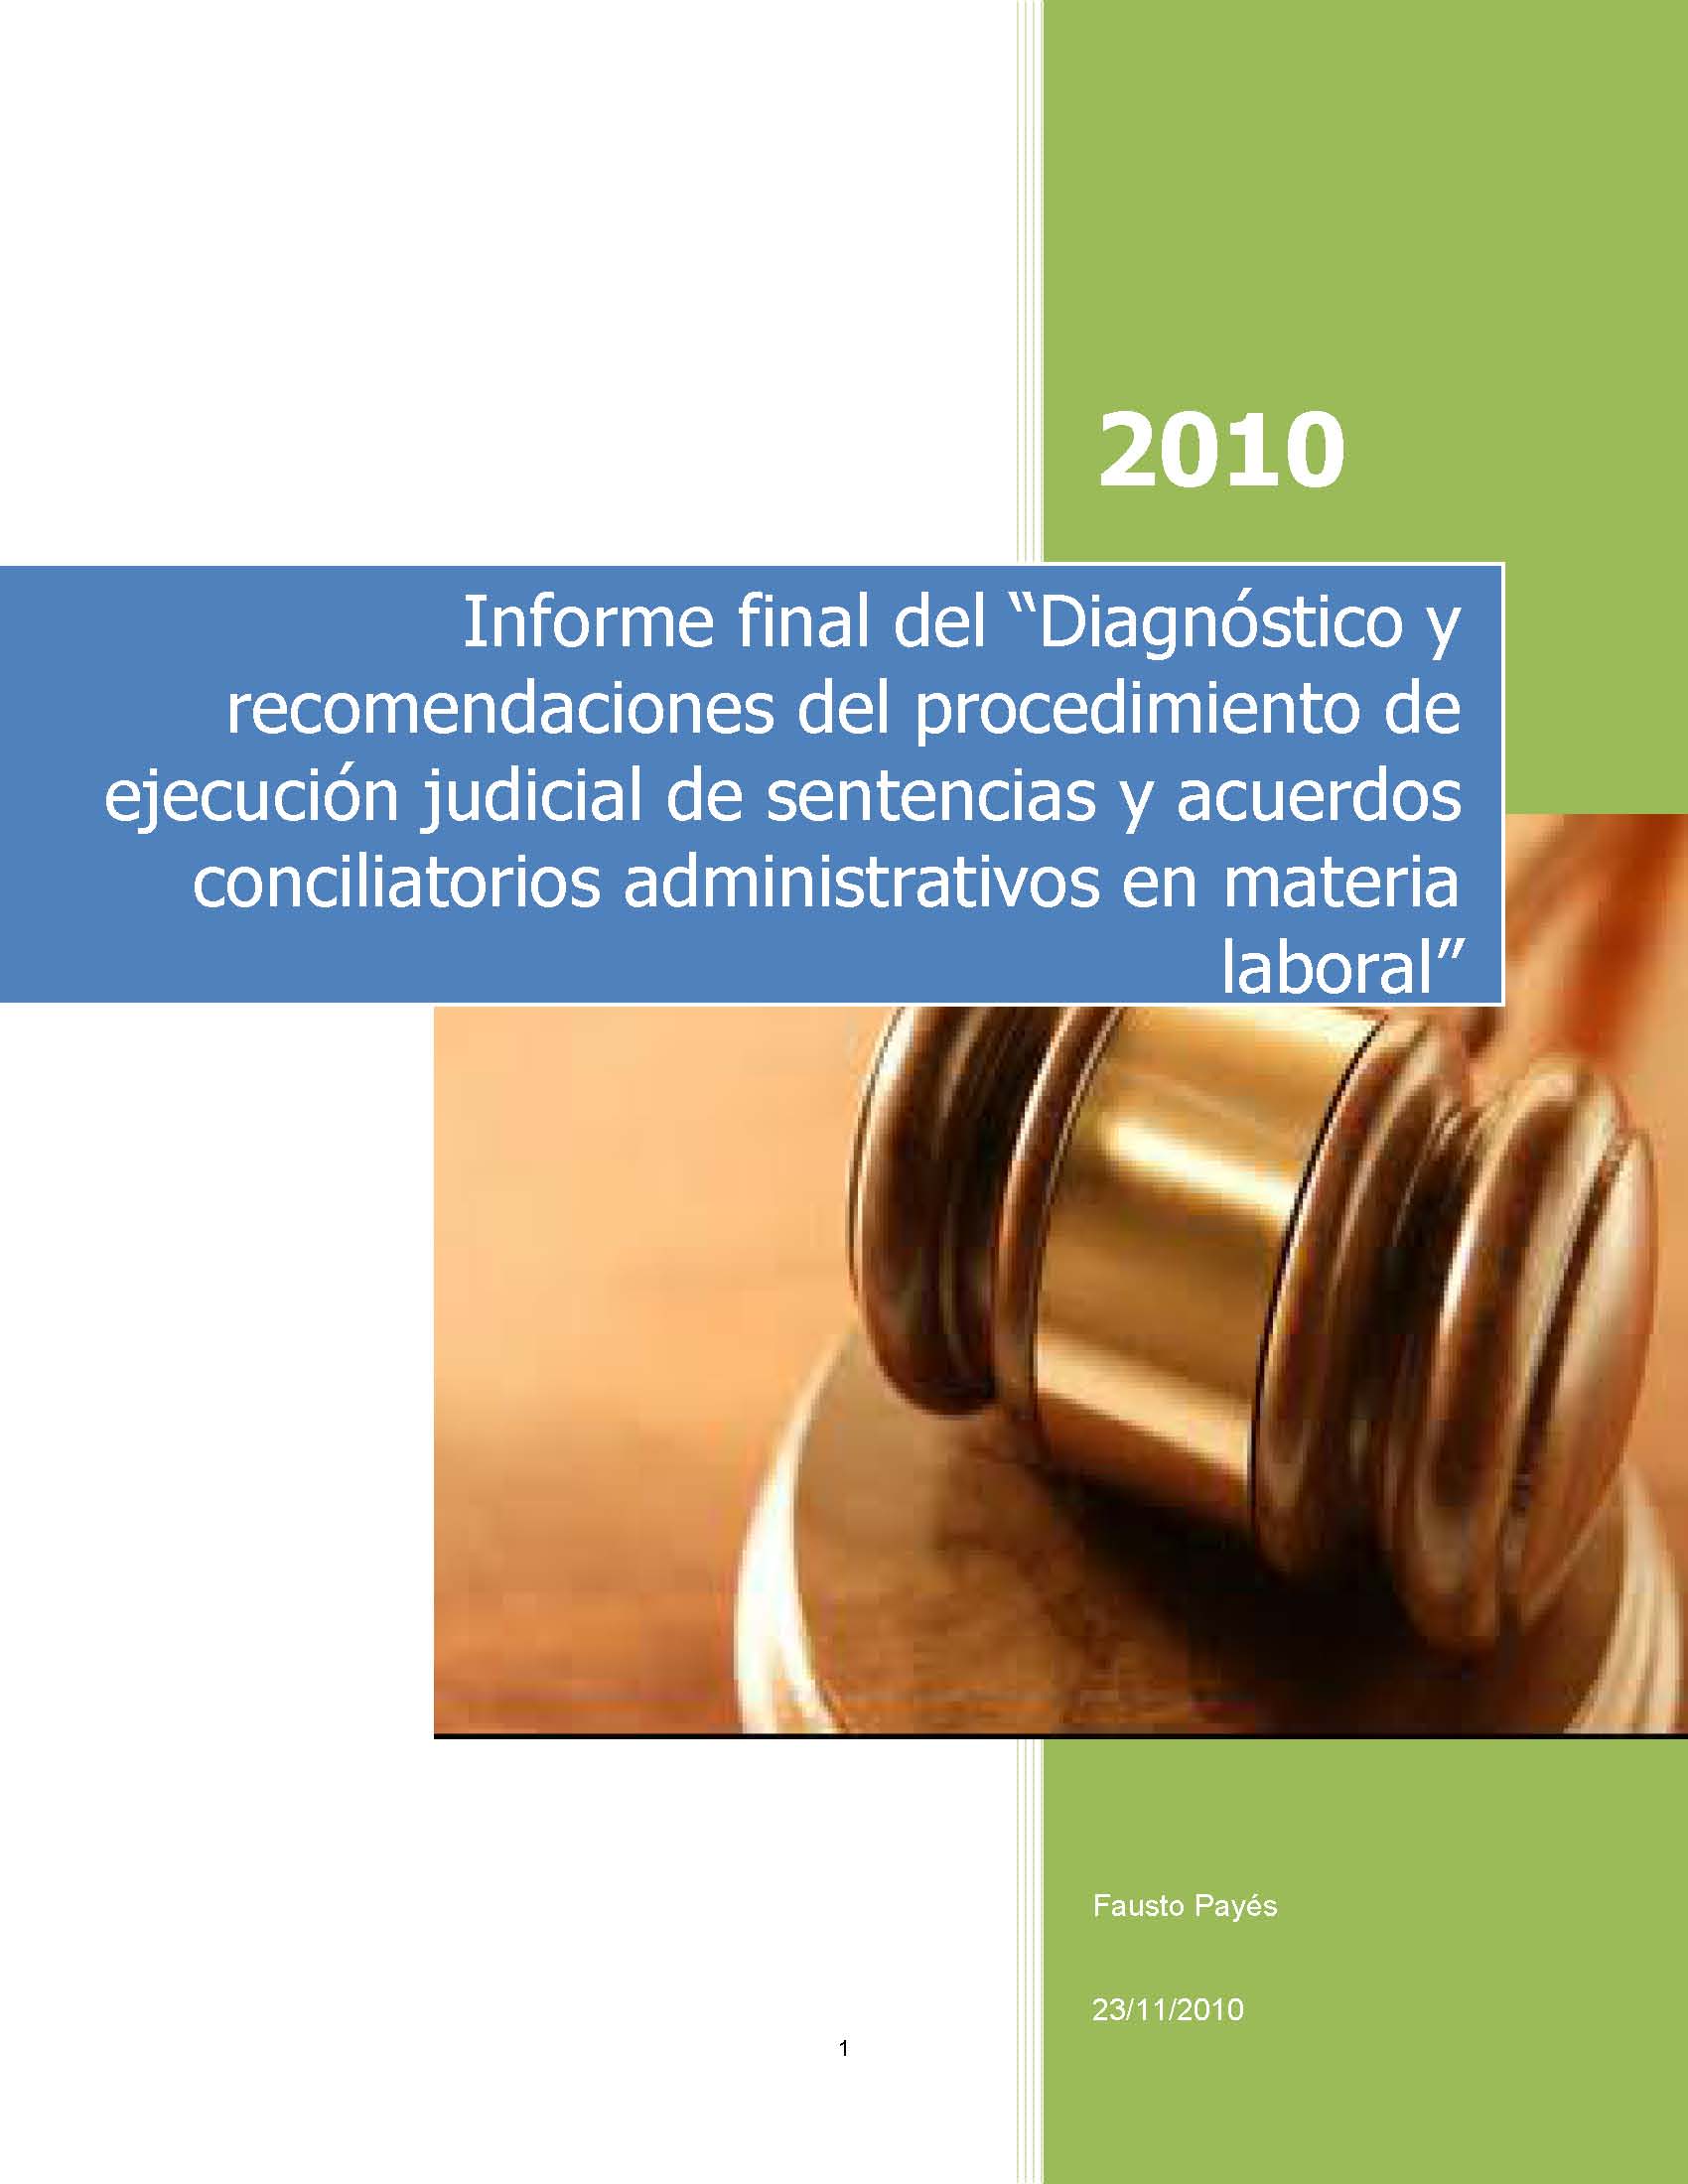 Informe final del "Diagnóstico y recomendaciones del procedimiento de ejecución judicial de sentencias y acuerdos conciliatorios administrativos en materia laboral" – 2010